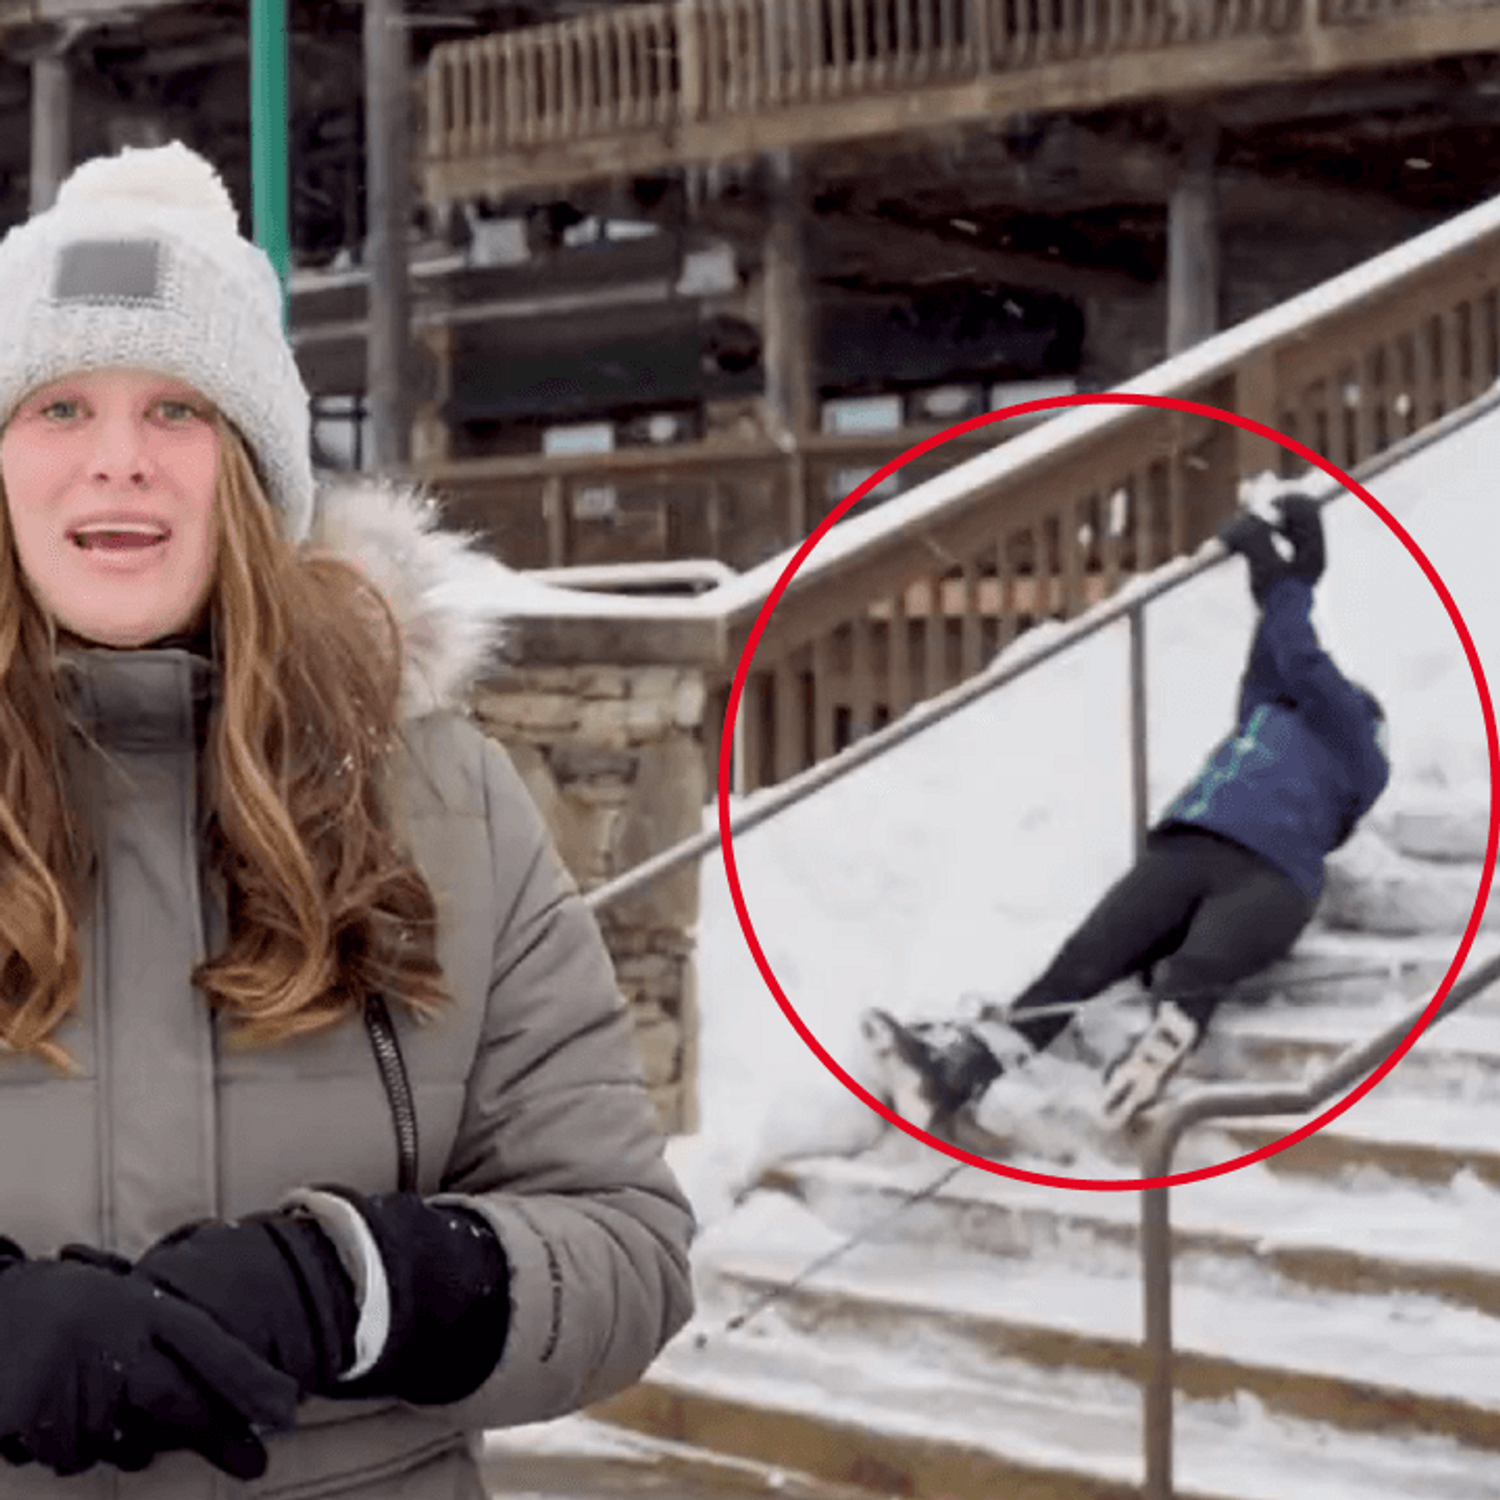 VIDEO. Cette skieuse en difficulté fait rire la toile